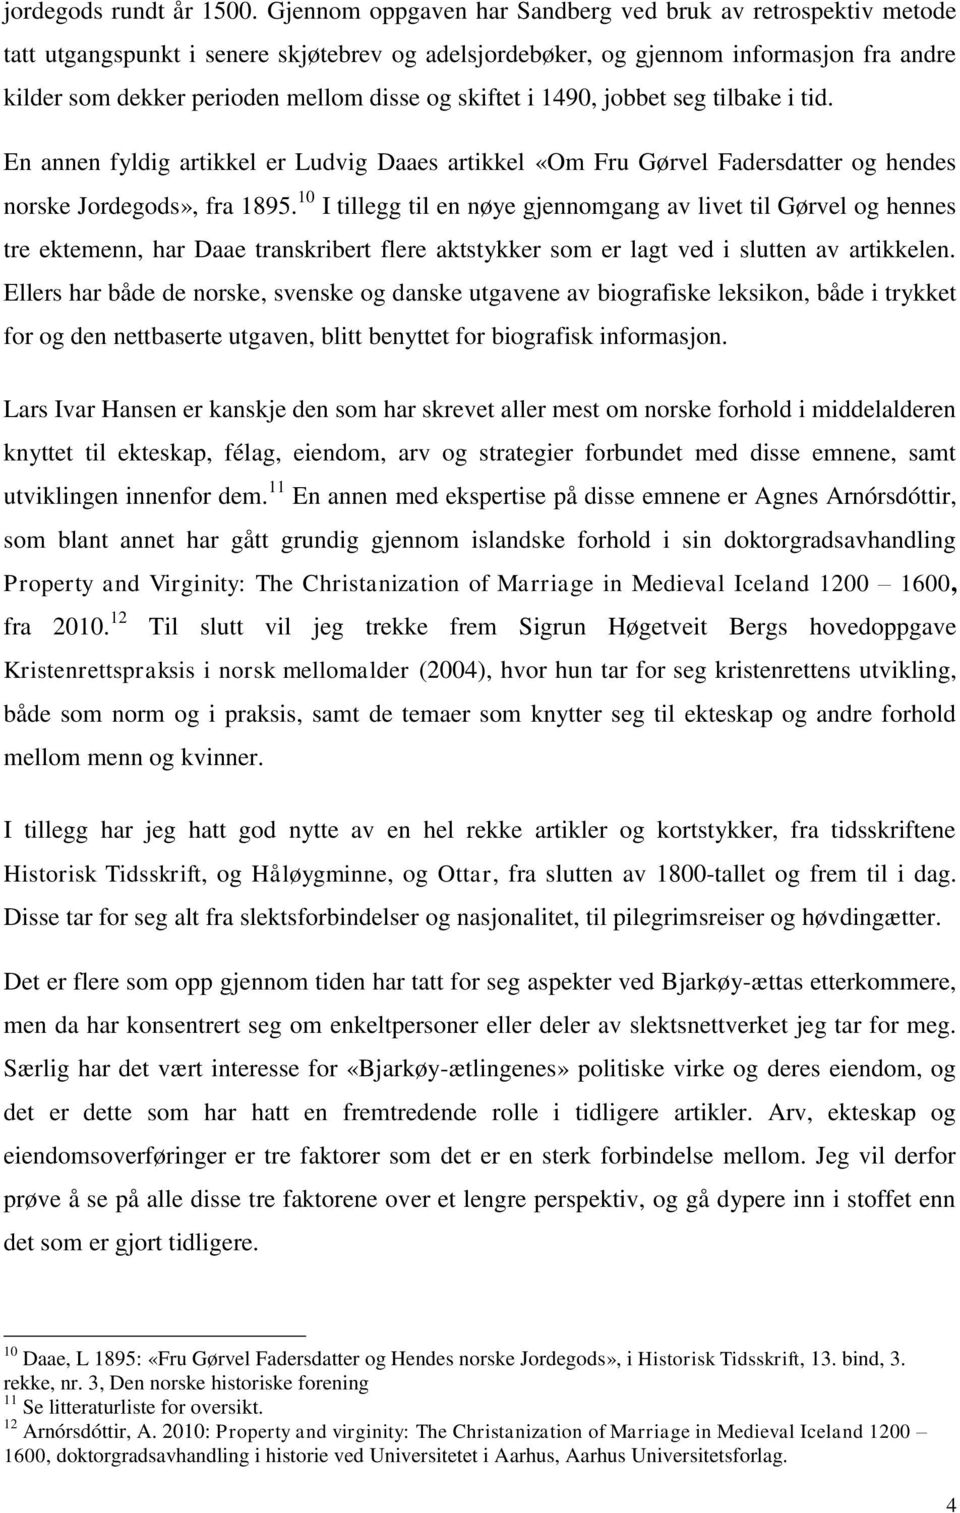 skiftet i 1490, jobbet seg tilbake i tid. En annen fyldig artikkel er Ludvig Daaes artikkel «Om Fru Gørvel Fadersdatter og hendes norske Jordegods», fra 1895.